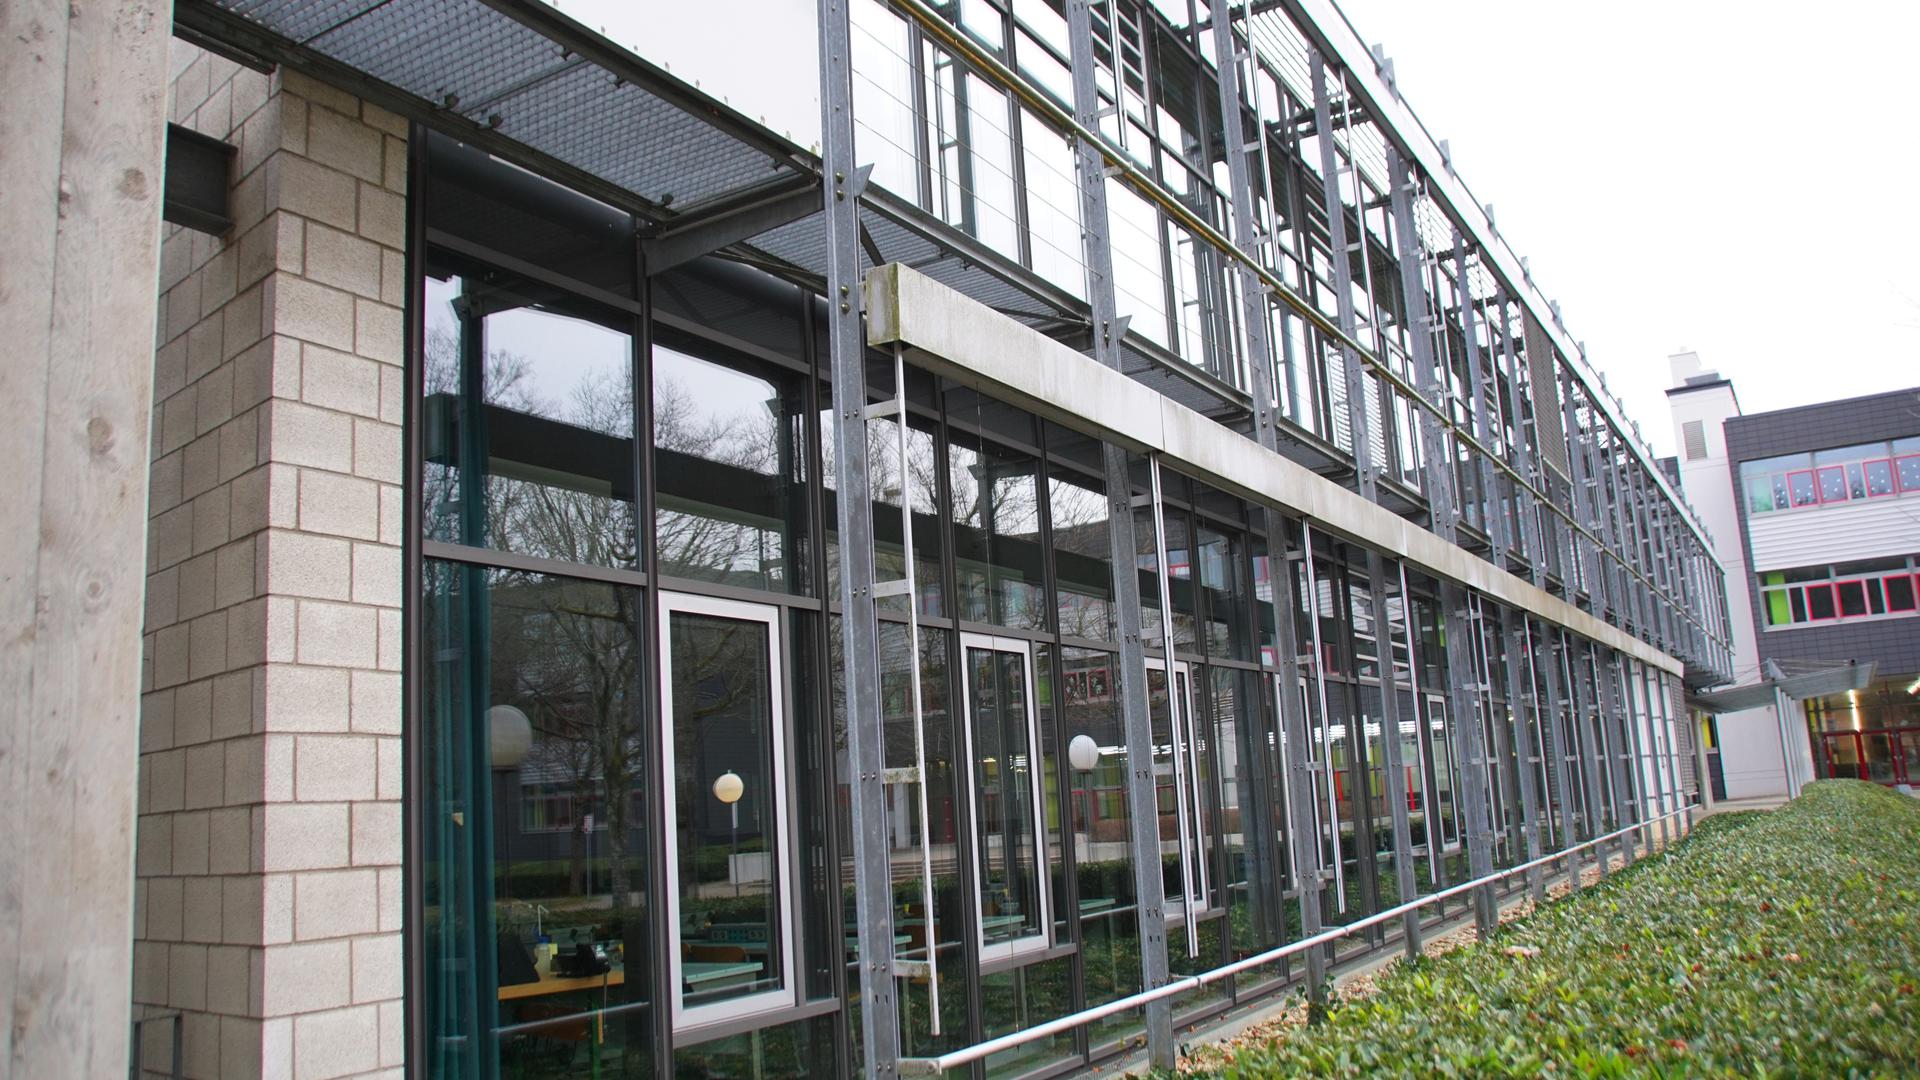 Beschlossene Sache: Die bisherige Planung soll am Königsbacher Bildungszentrum fortgesetzt werden. Diese sieht im Wesentlichen vor, das Naturwissenschafts-Gebäude im Norden des Schulgeländes zu erweitern.